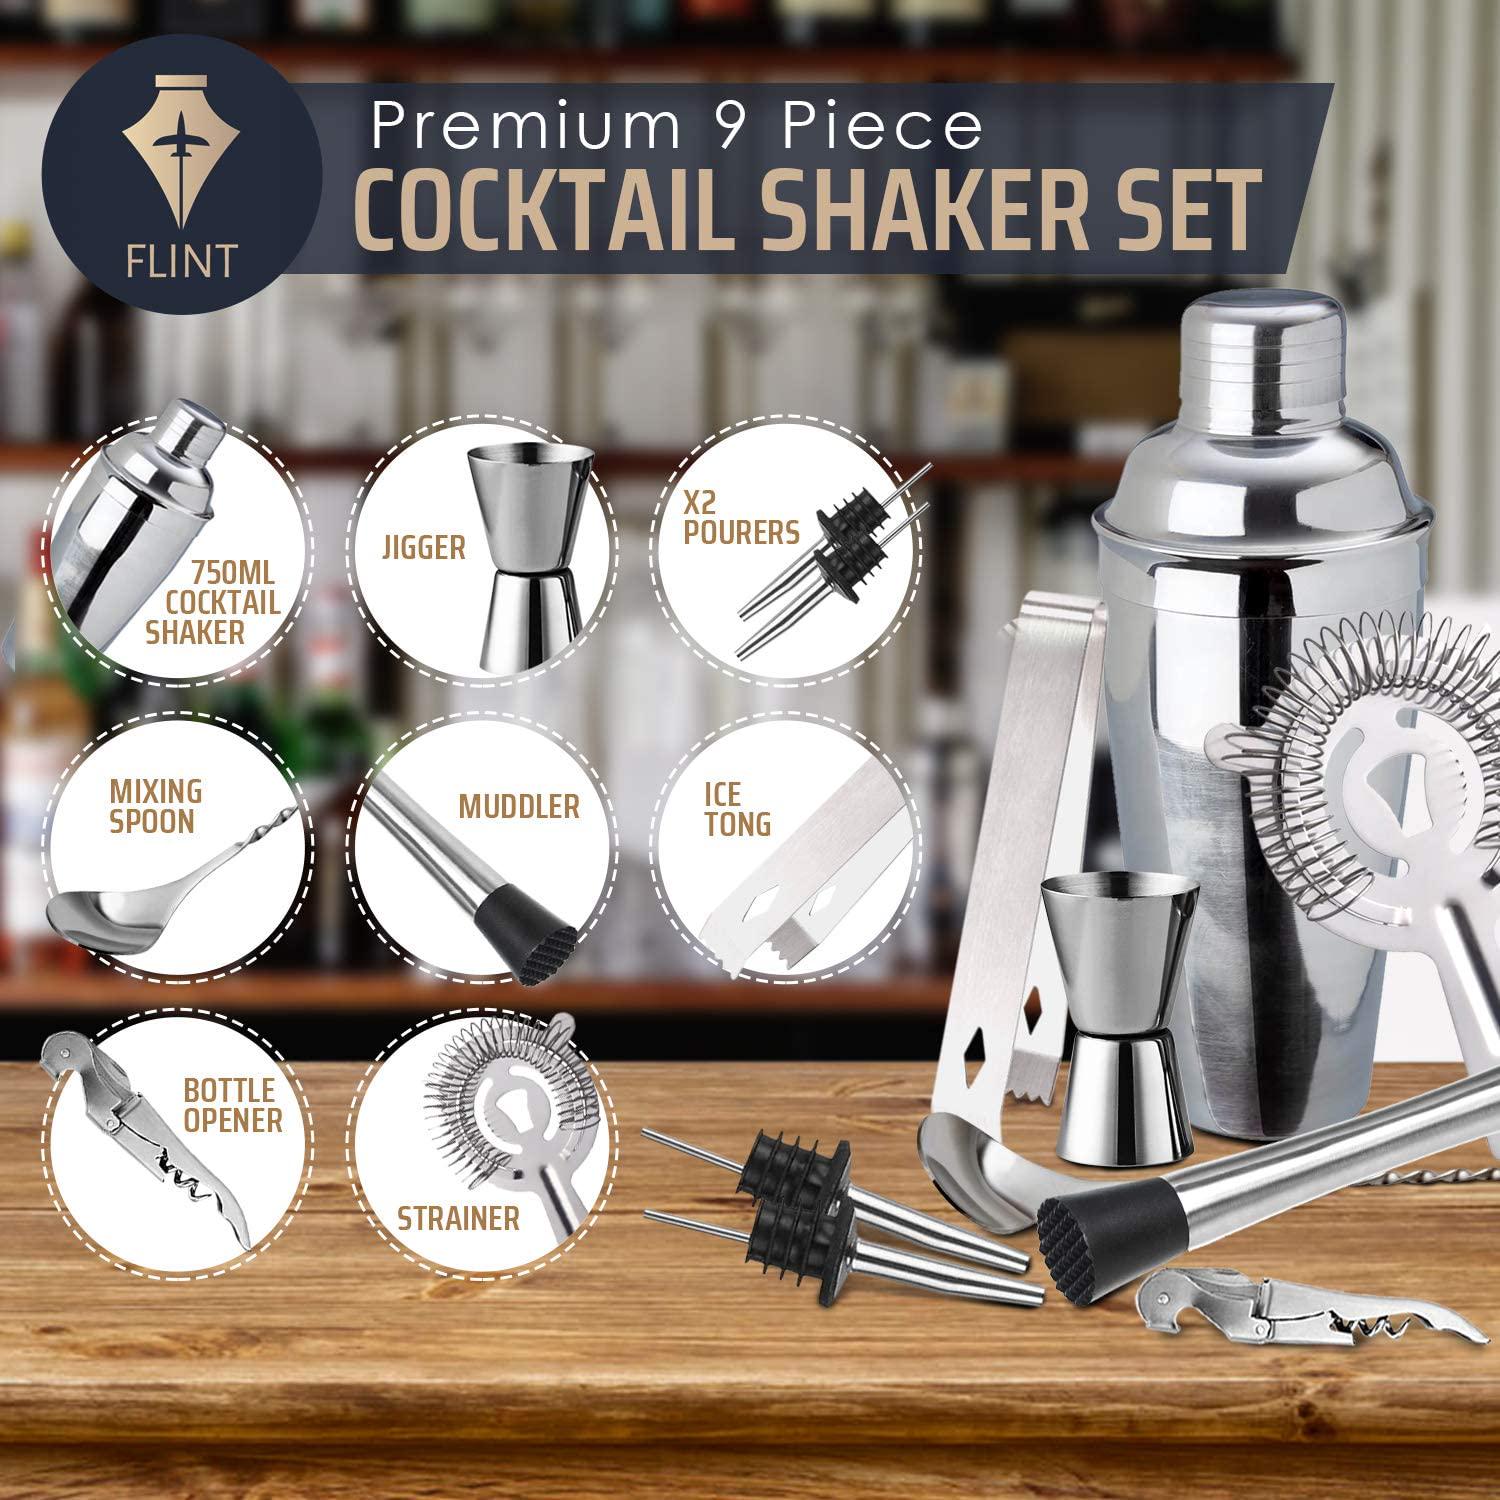 Flint, FLINT Cocktail Shaker Gift Set - 9 PCS Drink Mixing Barware Set | 750ml Cocktail Shaker, Mixing Spoon, Muddler, Ice Tongs, Jigger, Strainer, Bottle Opener, 2 Pourers | Home Bartending Kit